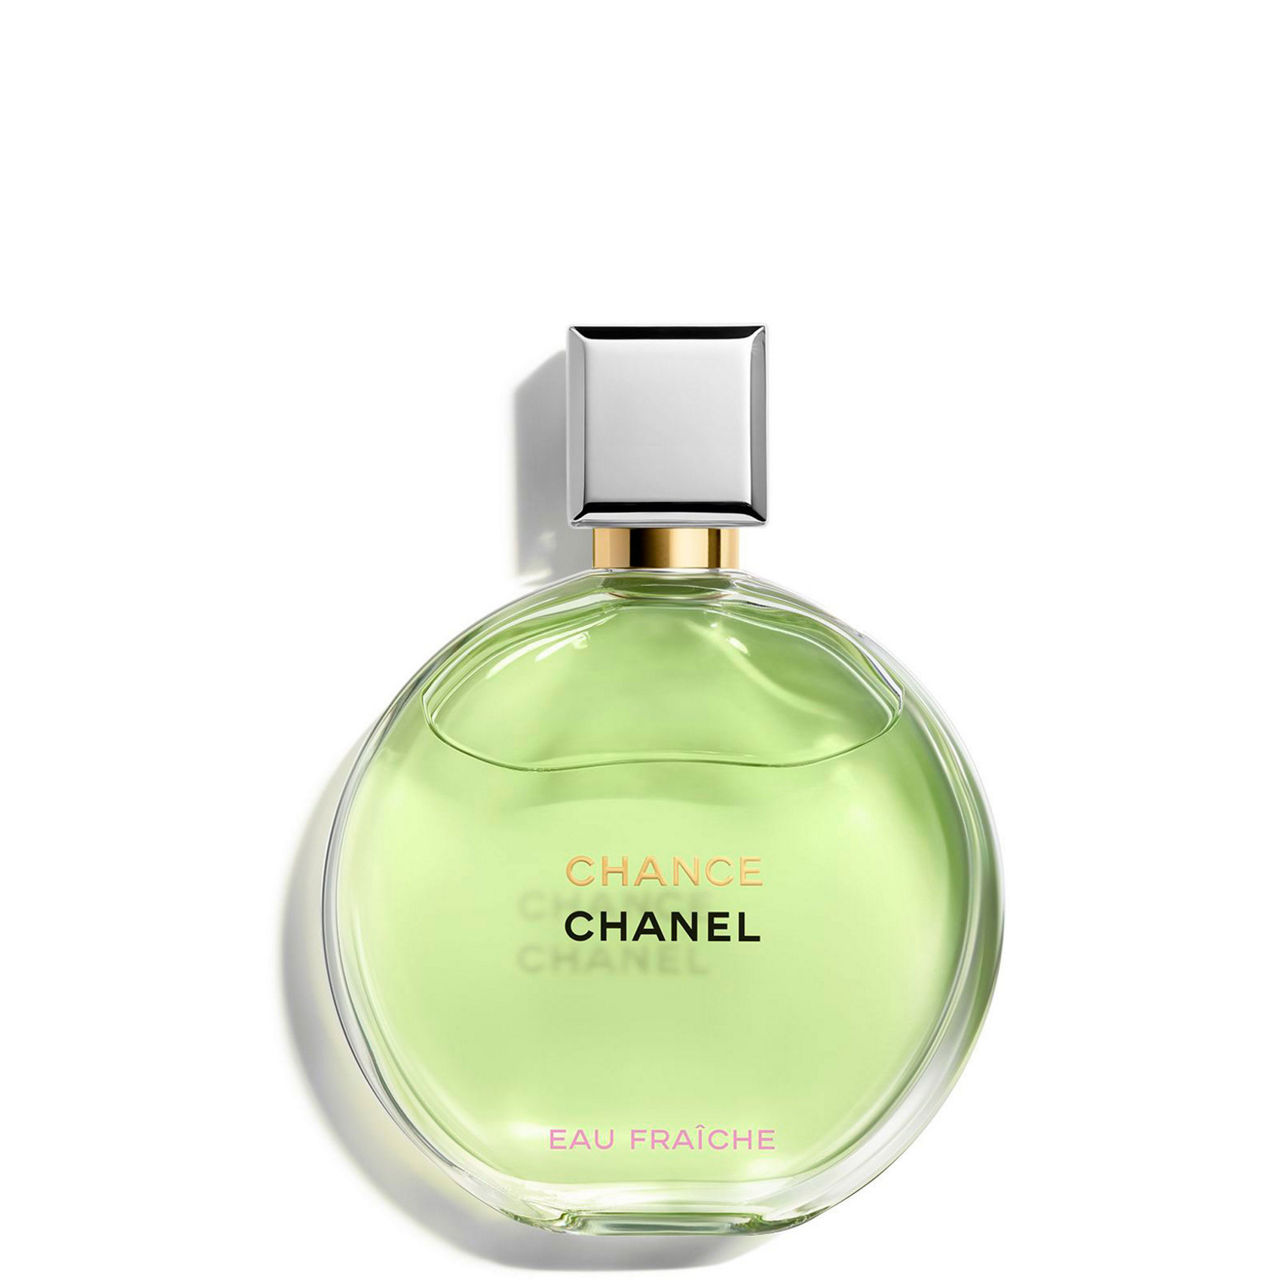 Chanel Chance Eau Fraiche Sheer Moisture Body Mist 100ml